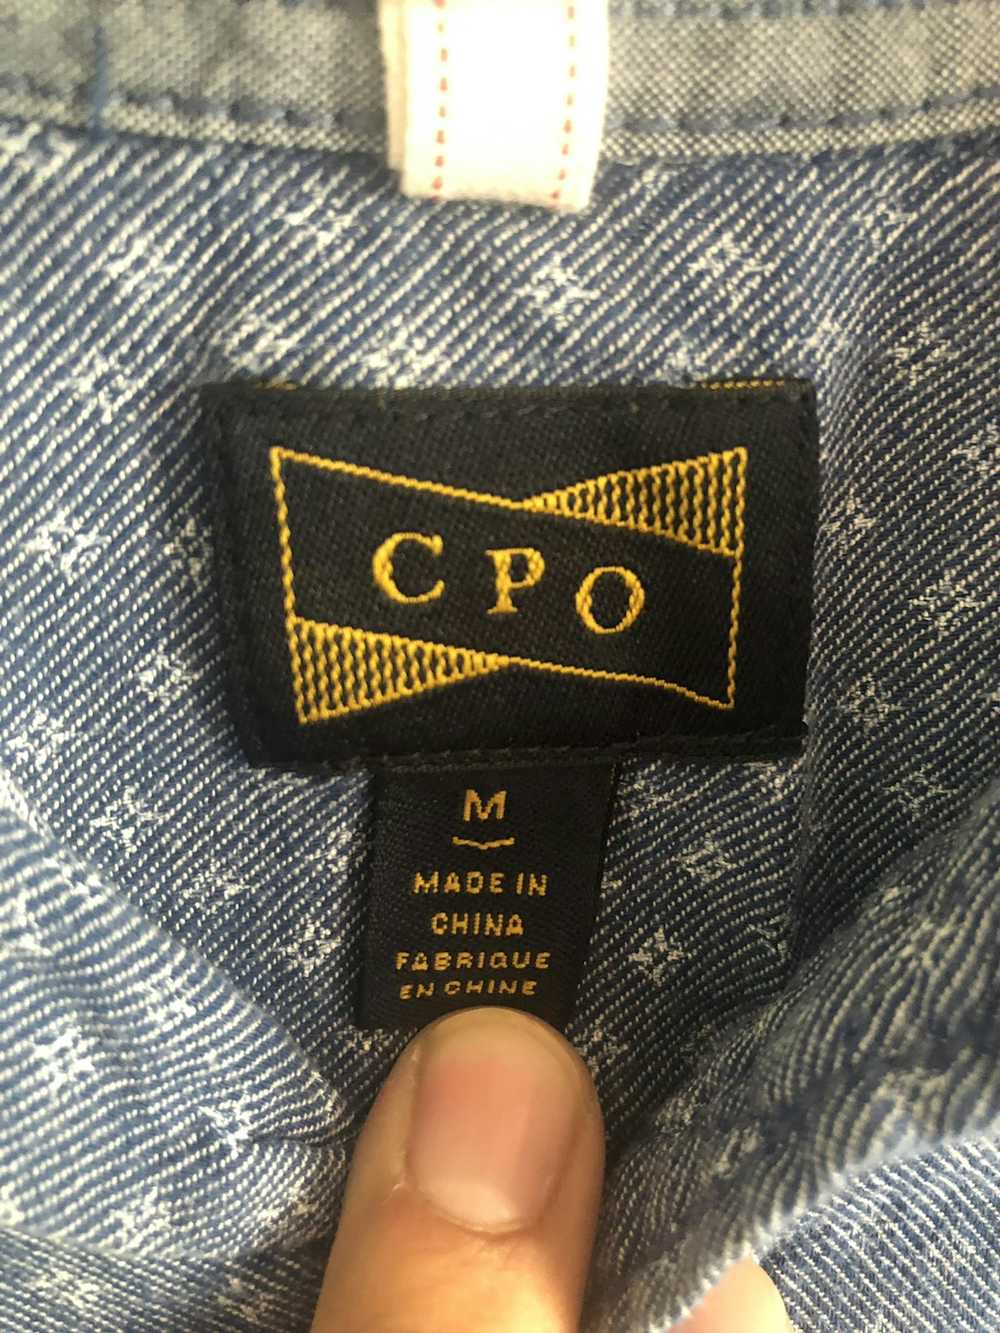 Cpo CPO long sleeve - image 2